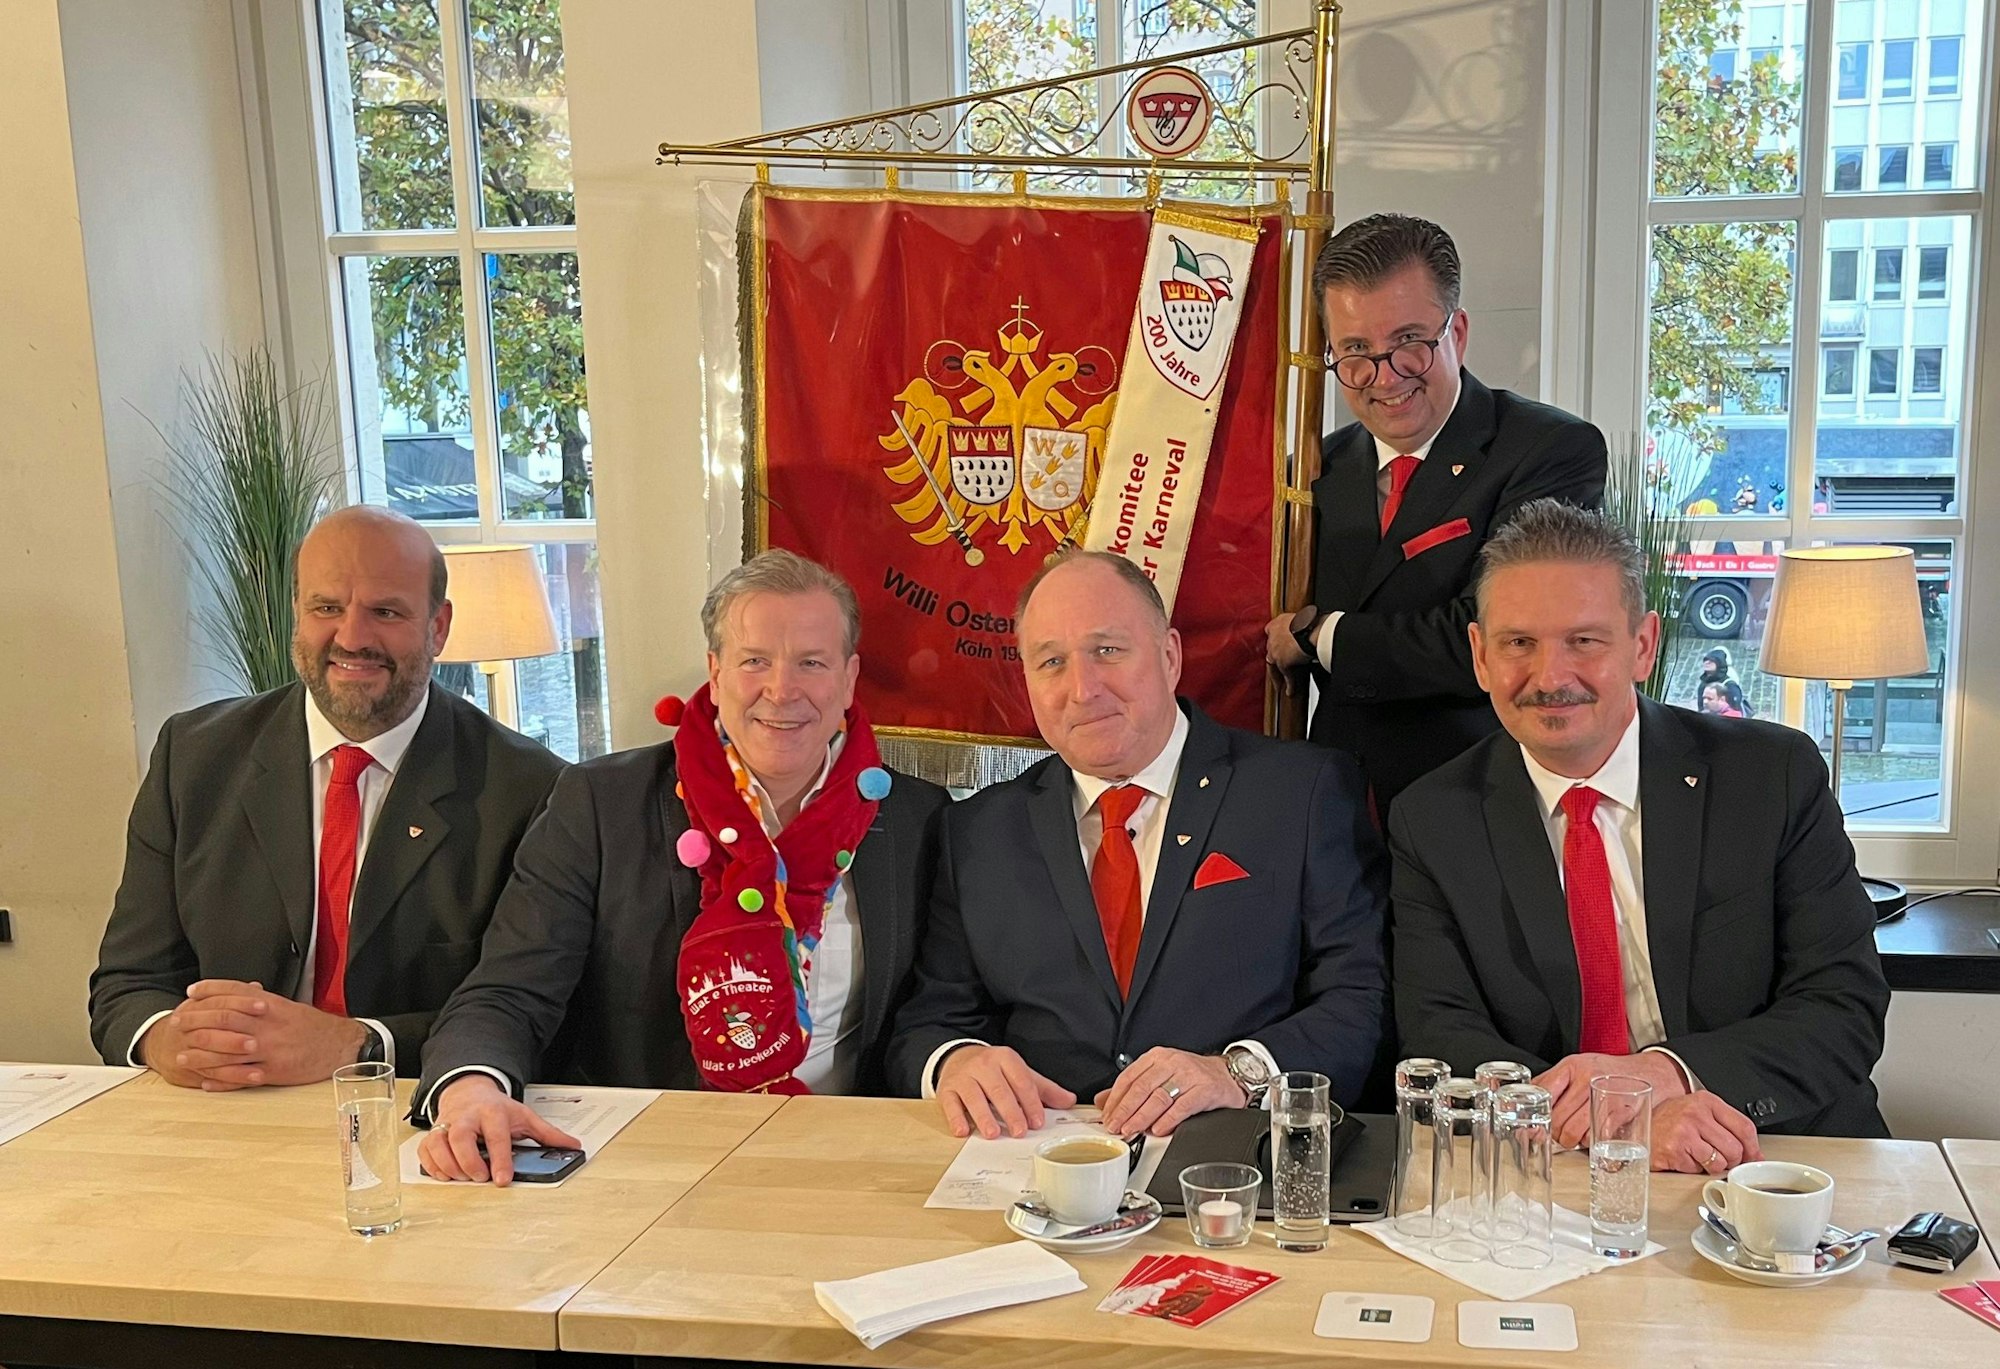 Vier Männer sitzen an einem Tisch, hinter ihnen steht ein weiterer und hält die Fahne der Willi-Ostermann-Gesellschaft.